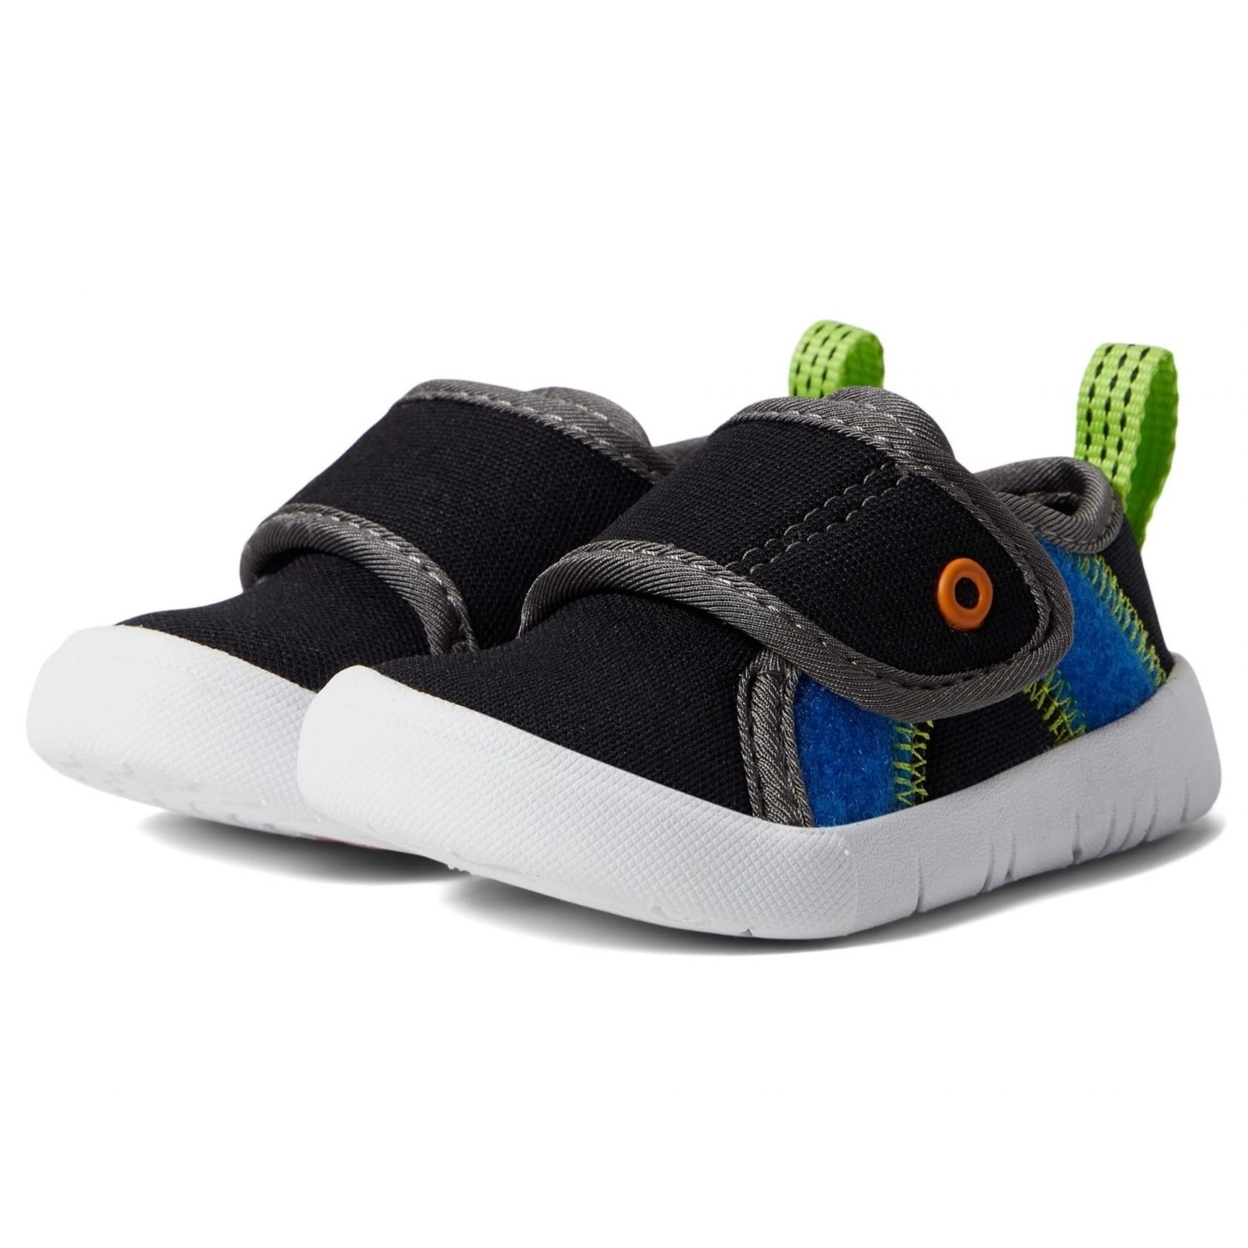 BOGS Unisex Baby Kicker Hook And Loop Shoe Sneaker Black Multi - 72811I-009 1 BLACK MULTI - BLACK MULTI, 4 Toddler